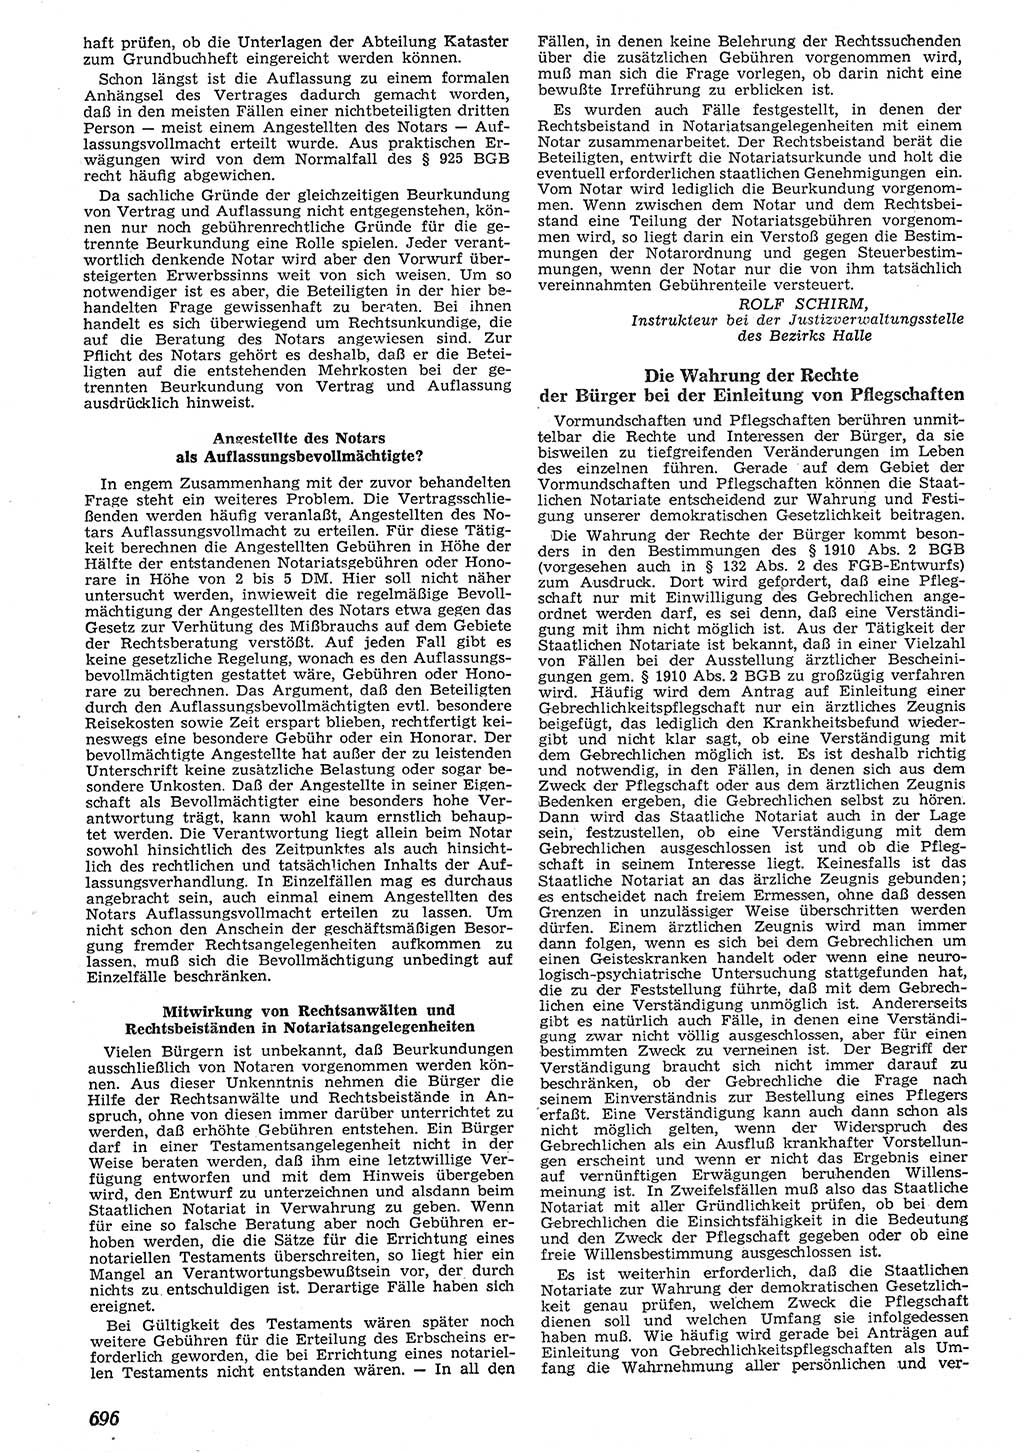 Neue Justiz (NJ), Zeitschrift für Recht und Rechtswissenschaft [Deutsche Demokratische Republik (DDR)], 10. Jahrgang 1956, Seite 696 (NJ DDR 1956, S. 696)